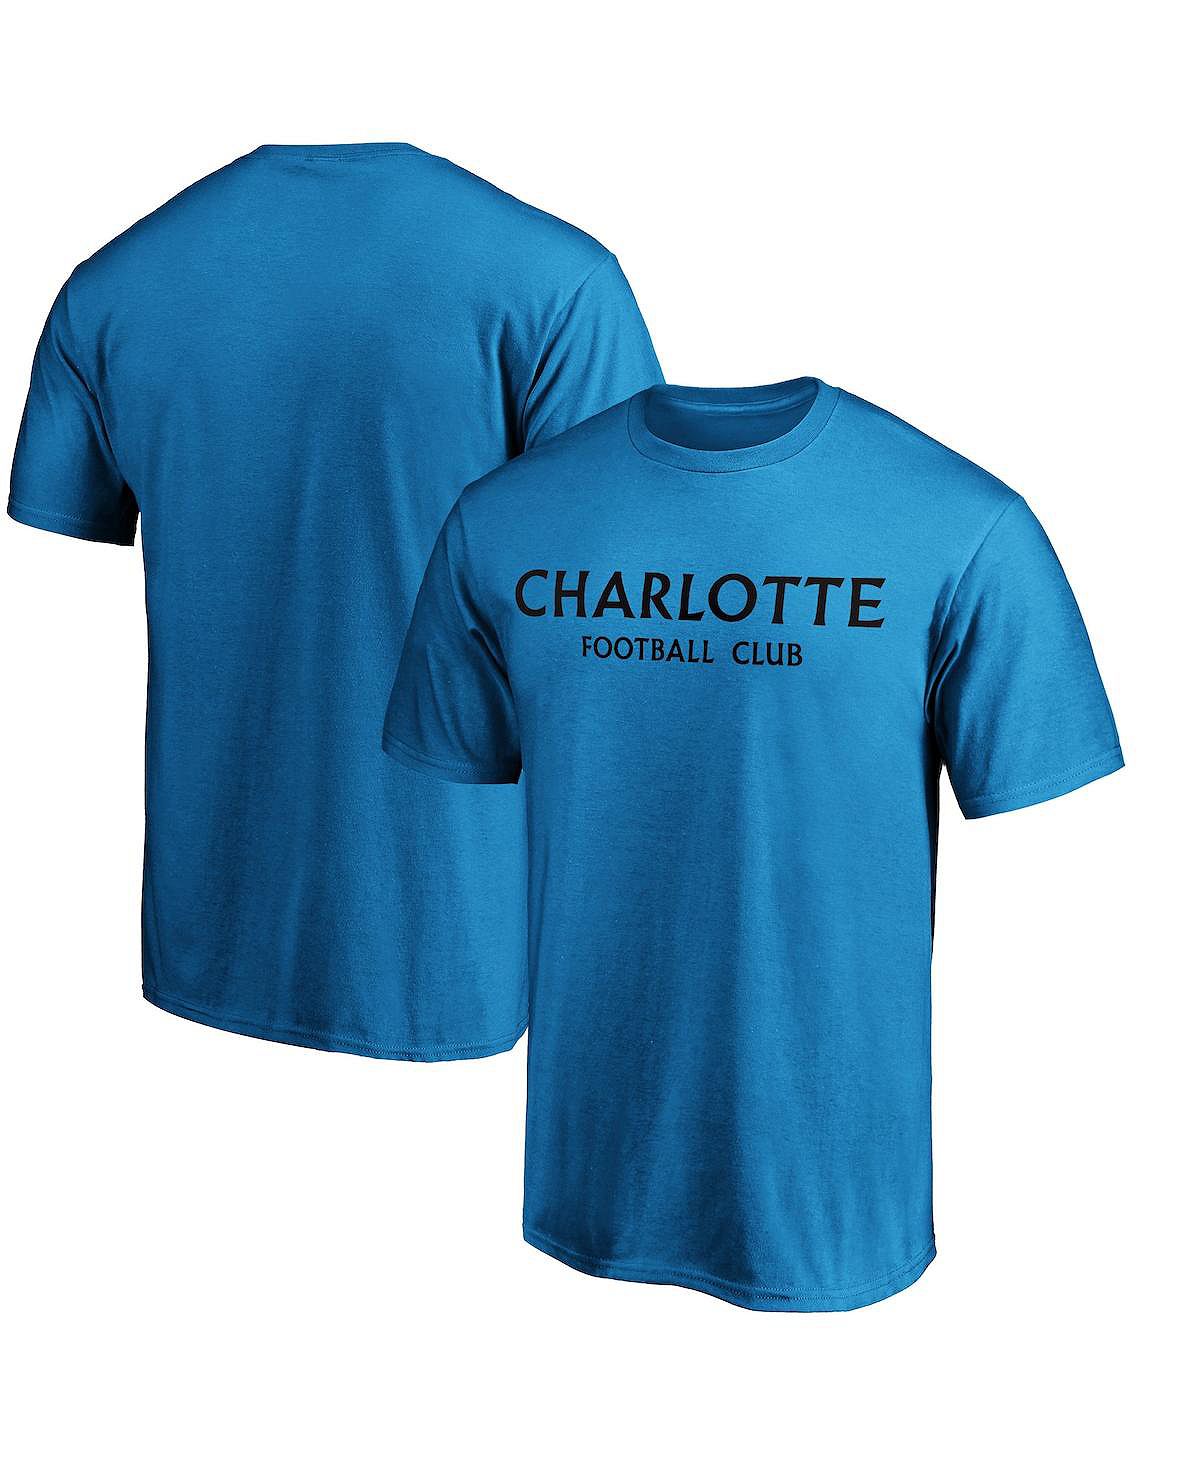 цена Мужская фирменная синяя футболка с надписью charlotte fc Fanatics, синий